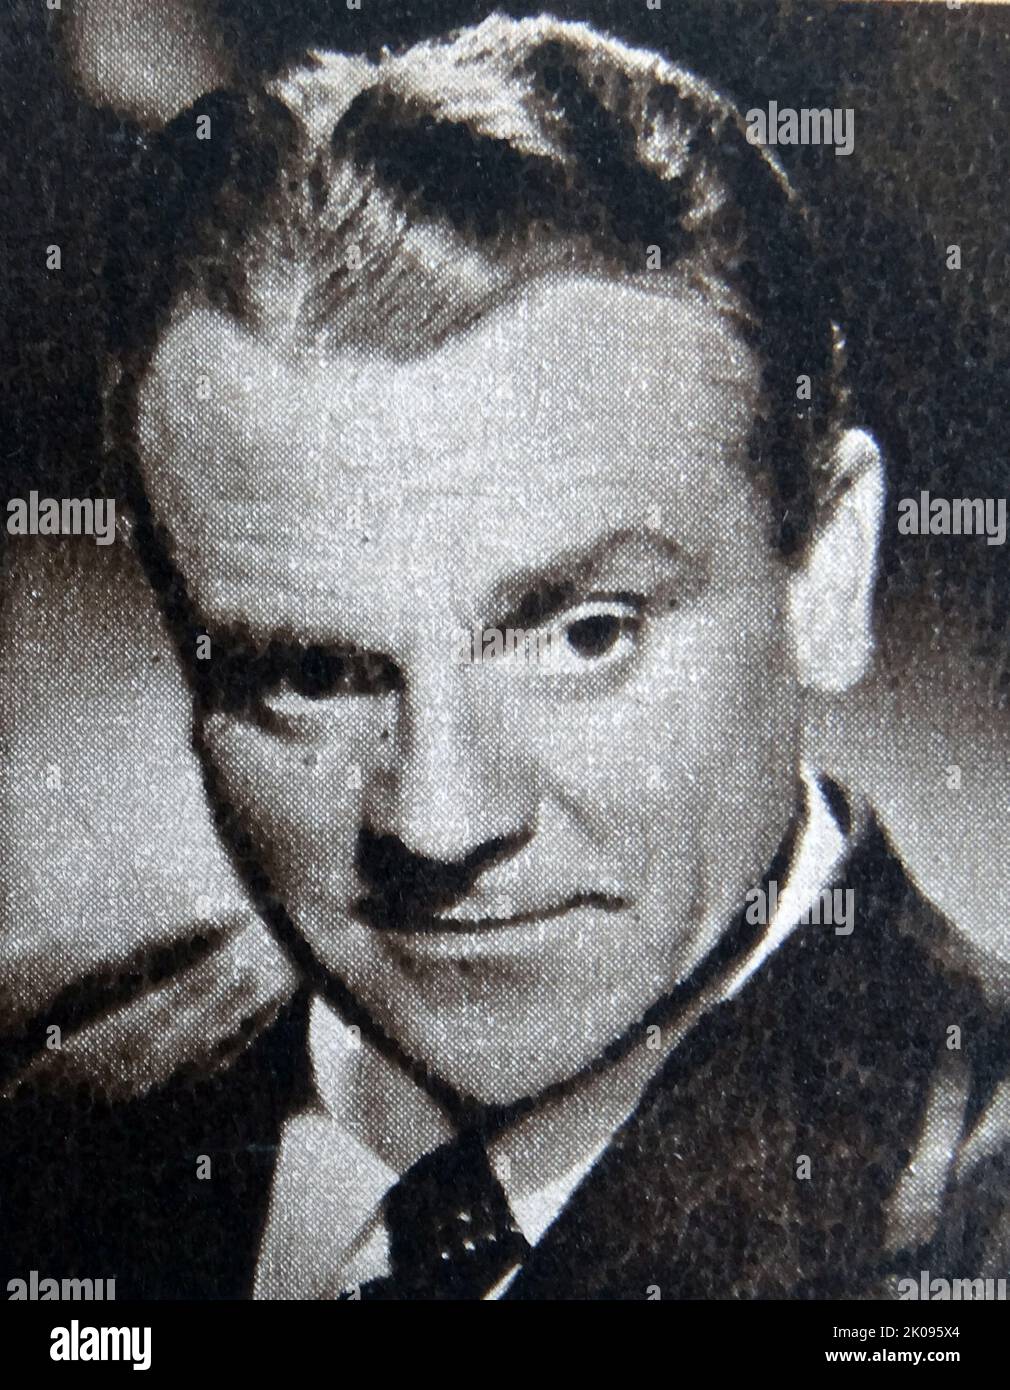 James Cagney. James Francis Cagney Jr. (17 juillet 1899 - 30 mars 1986)[2] était un acteur et danseur américain. Sur scène et dans le film, Cagney était connu pour ses performances constamment énergiques, son style vocal distinctif, et le temps de bande dessinée deadpan. Banque D'Images